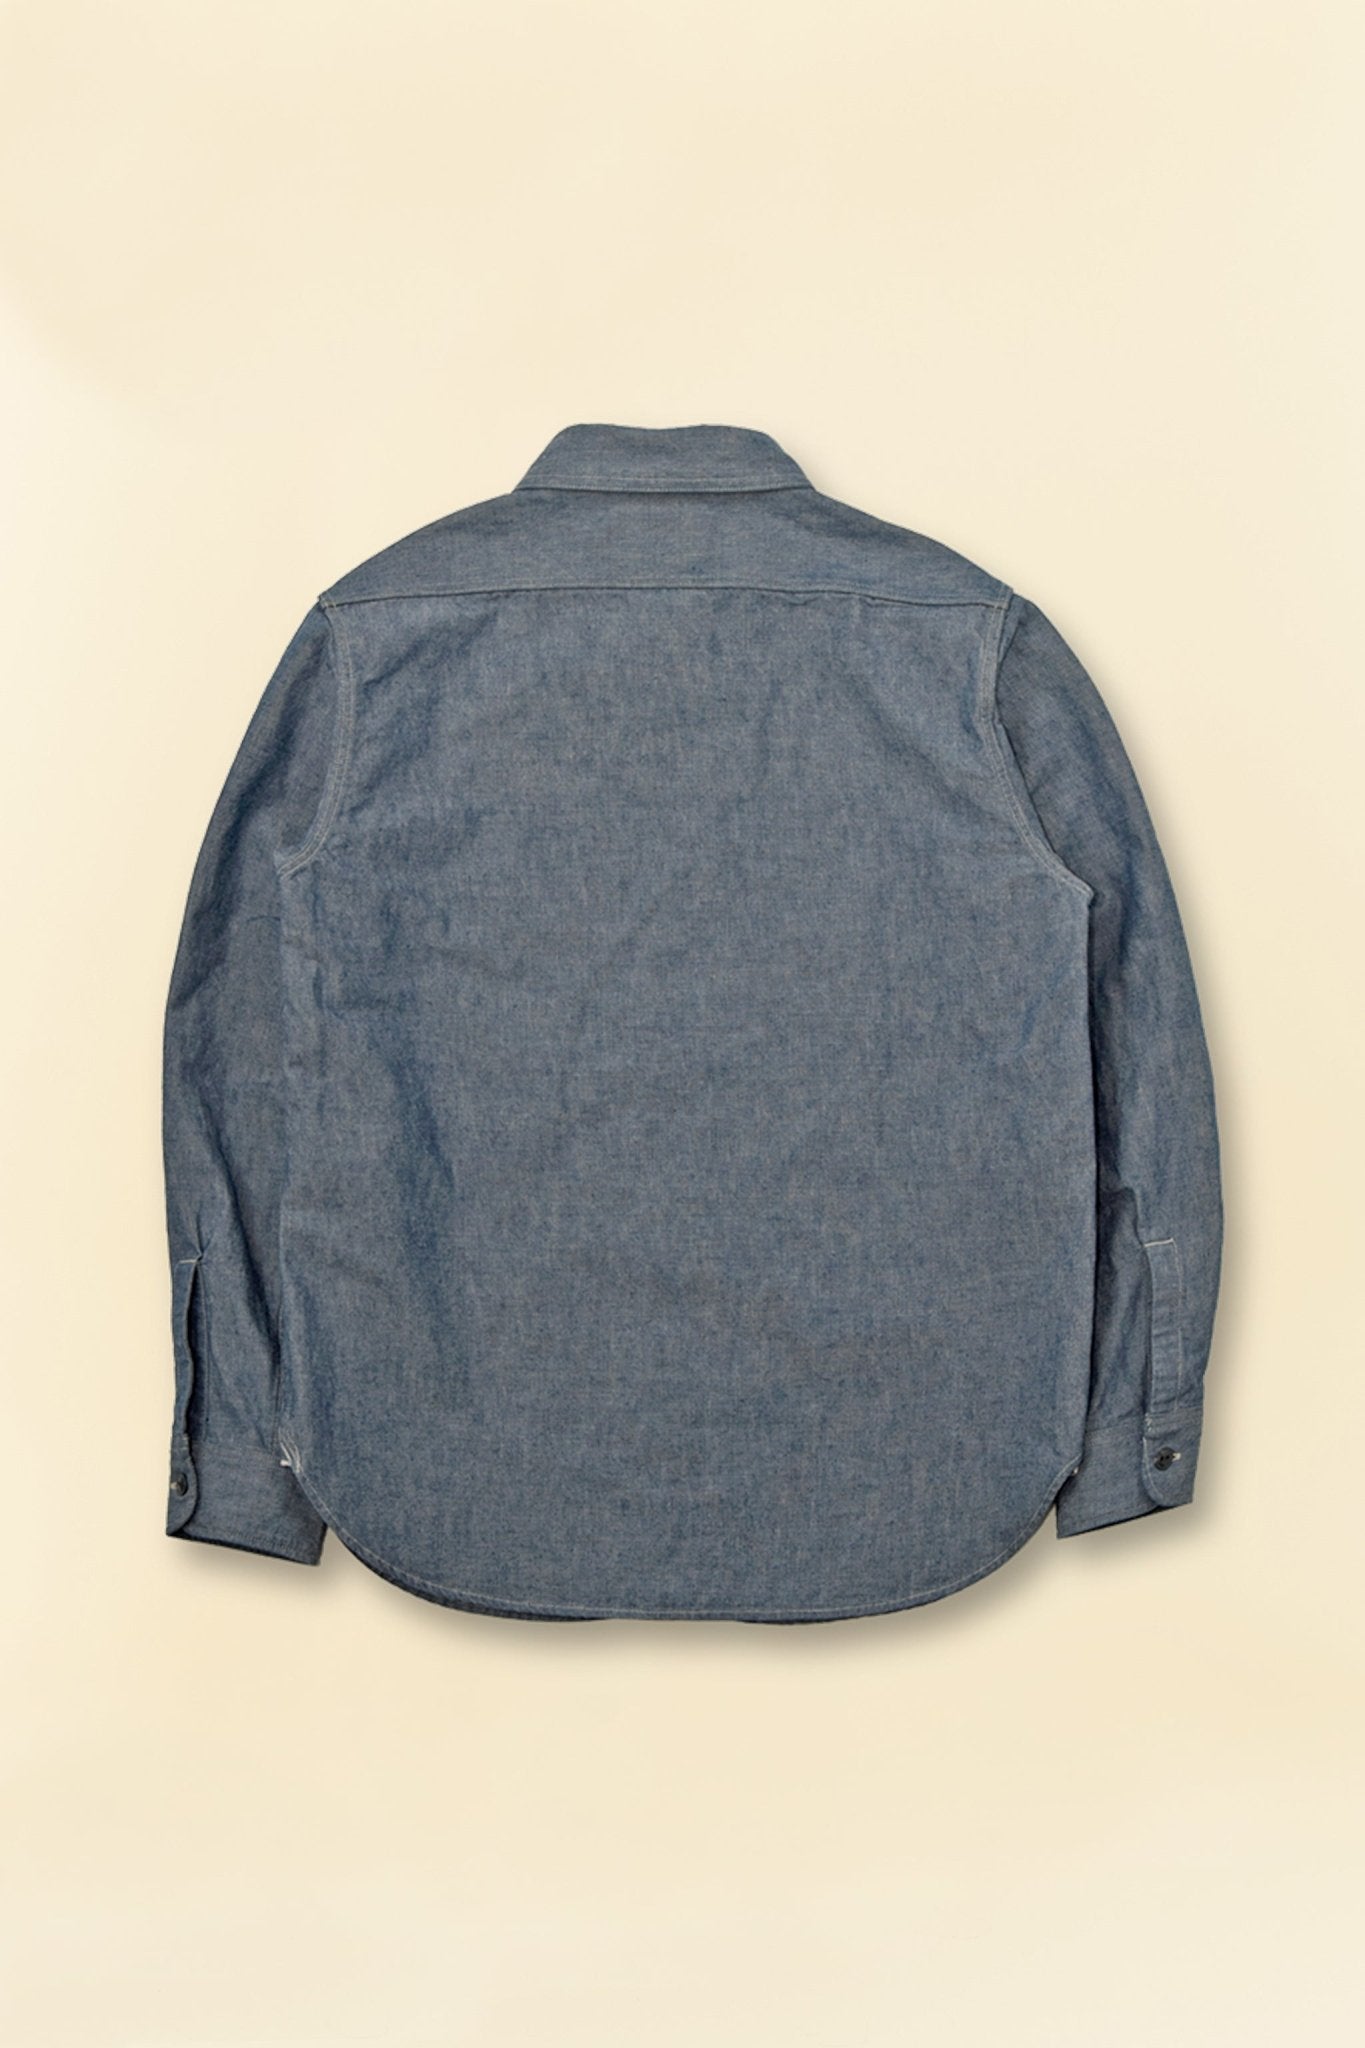 Fullcount Heavy Duty Chambray Shirt - Indigo Blue -Fullcount - URAHARA